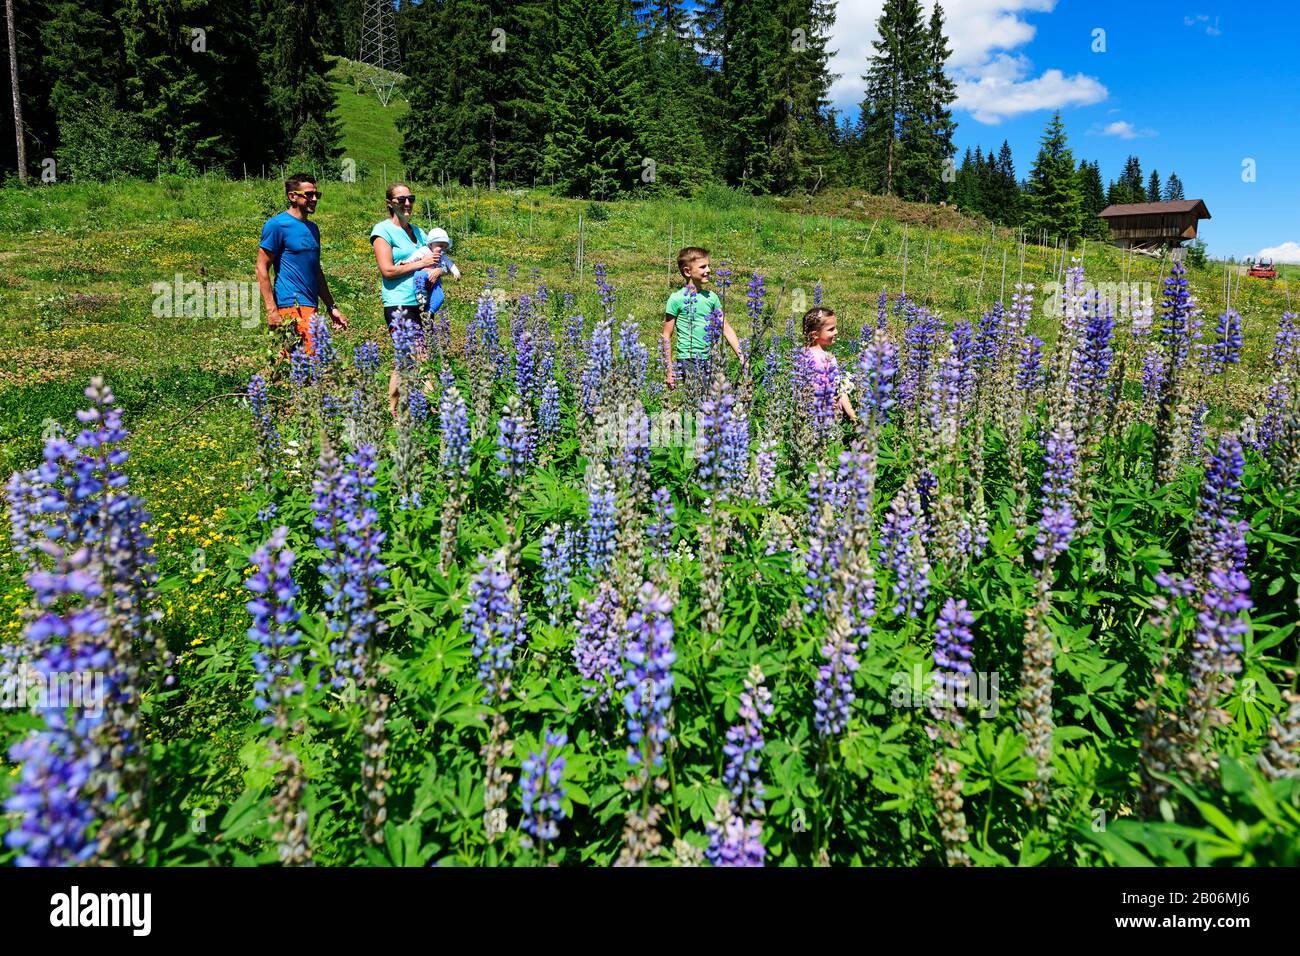 La famille marche près de la gare centrale à travers un champ de lupins fleuris, Hohe Salve, Hopfgarten, Brixental, Kitzbuehel Alpes, Tyrol, Autriche Banque D'Images